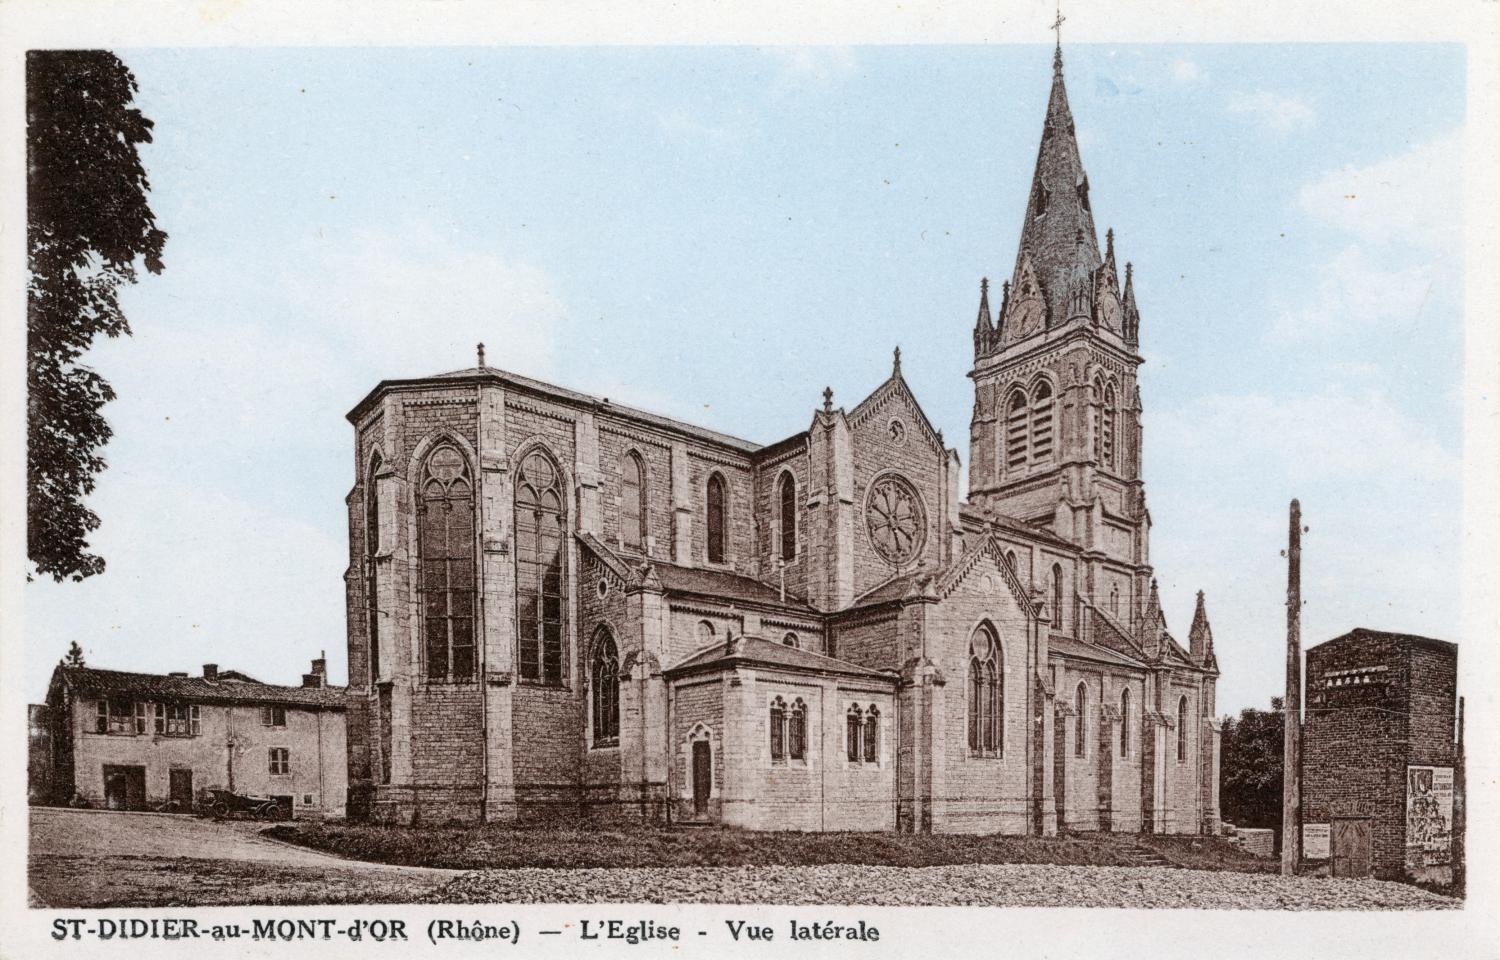 St-Didier-au-Mont-d'Or (Rhône). - L'Eglise. - Vue latérale